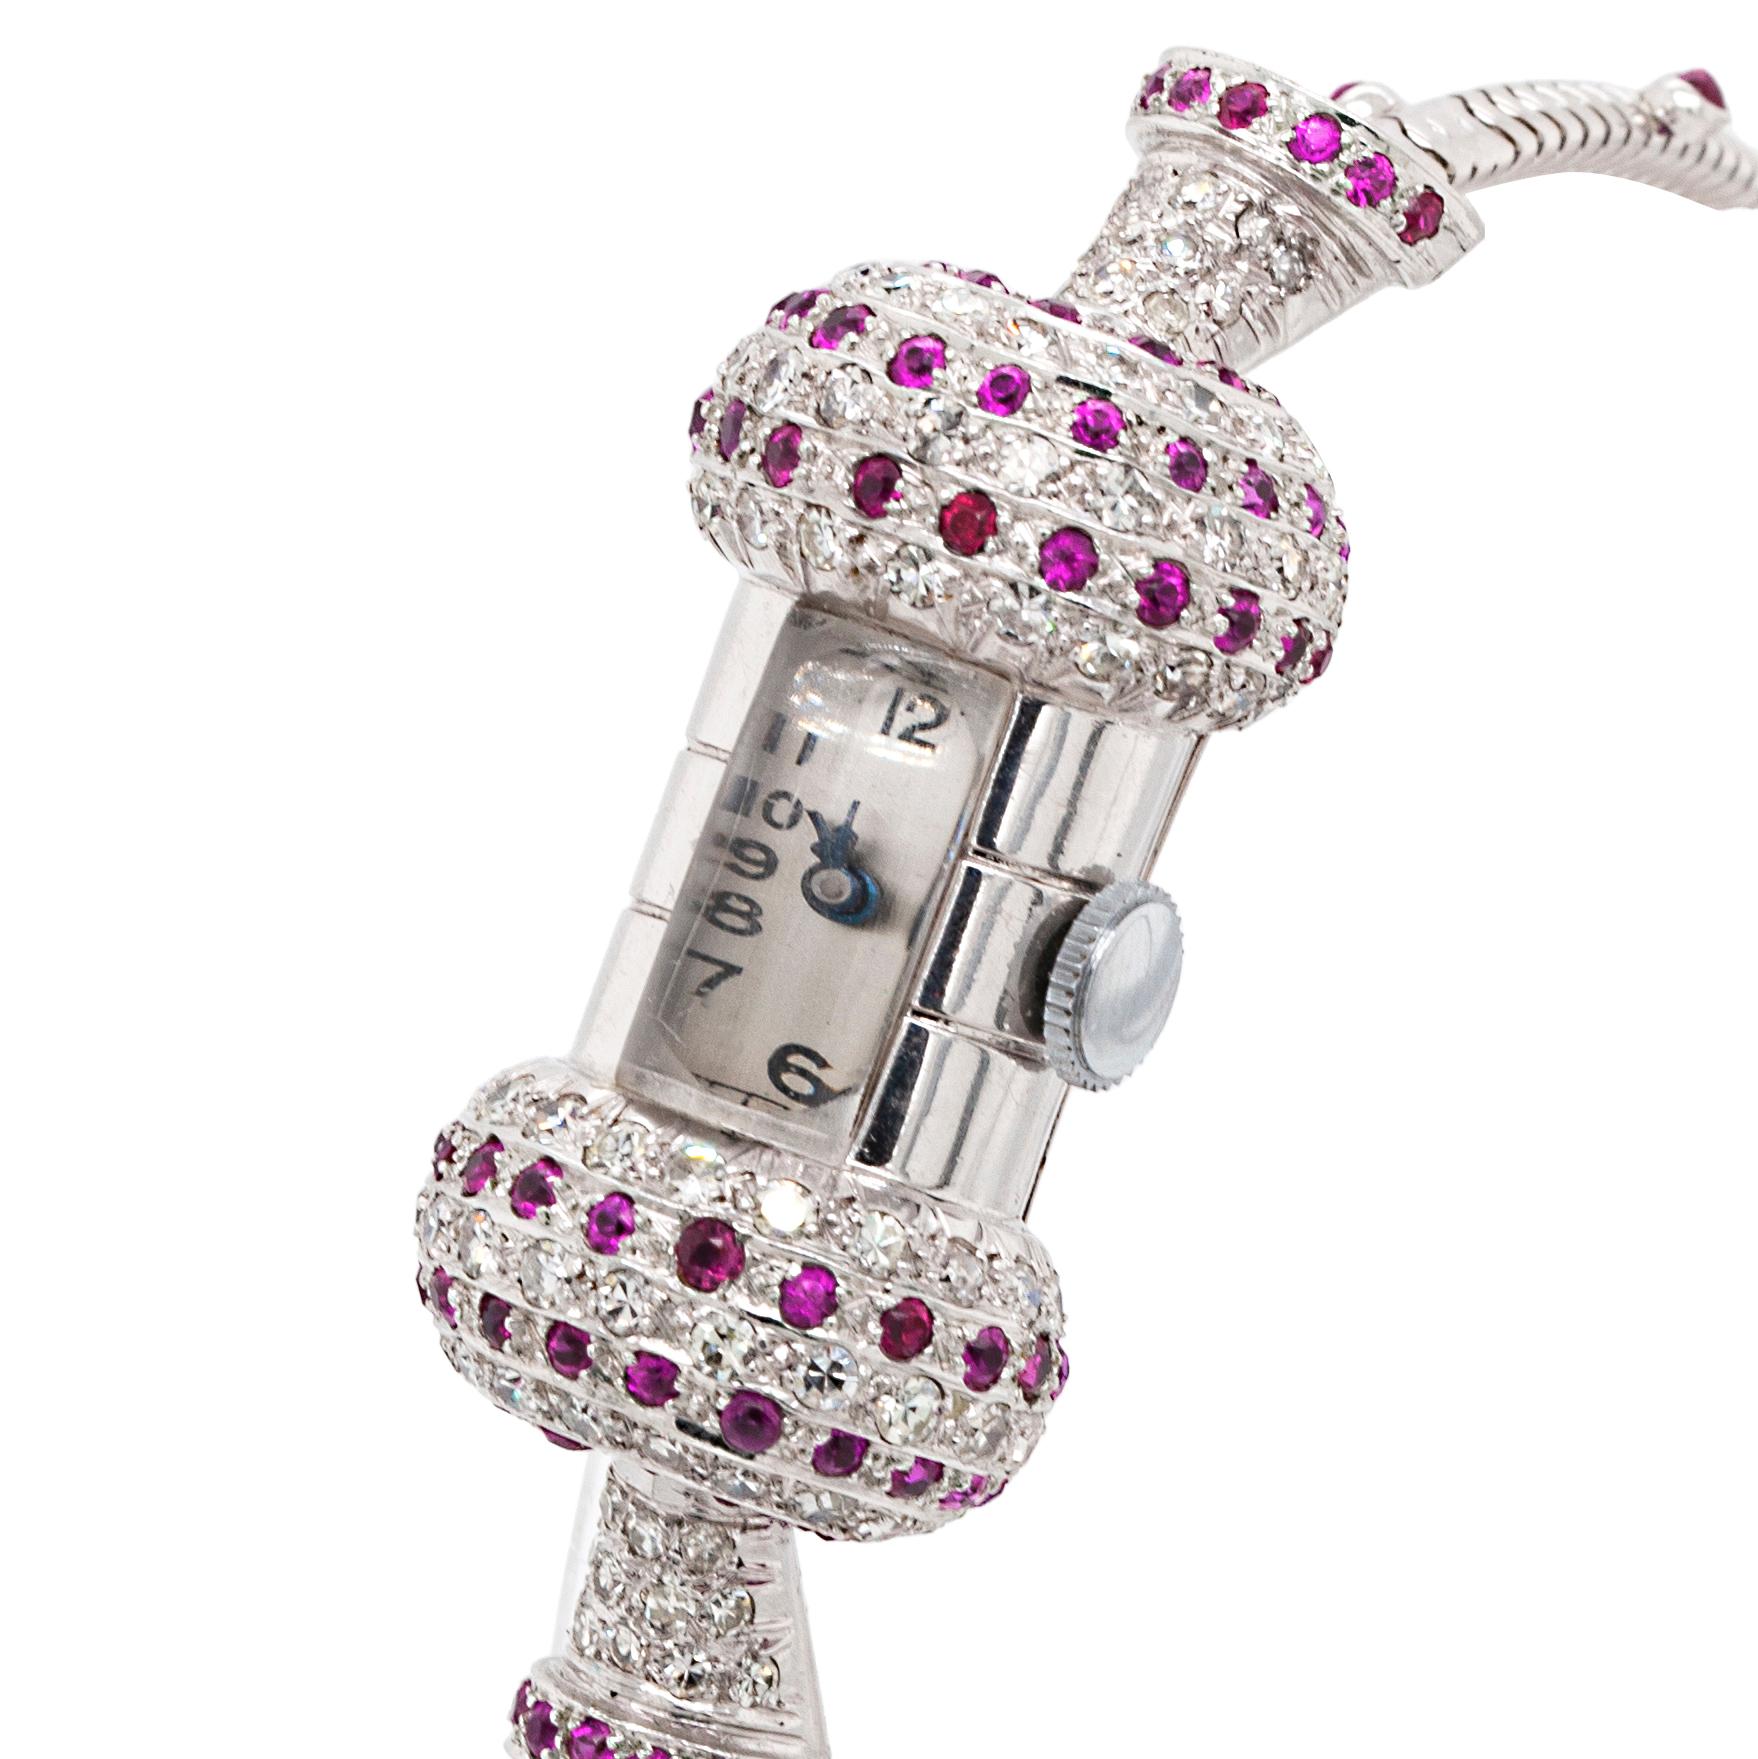 Complétez votre collection avec cette montre-bracelet unique des années 1940 qui allie parfaitement l'élégance rétro à l'éclat frappant des diamants et à la couleur vive des rubis.

Cette montre unique en son genre a été soigneusement fabriquée,